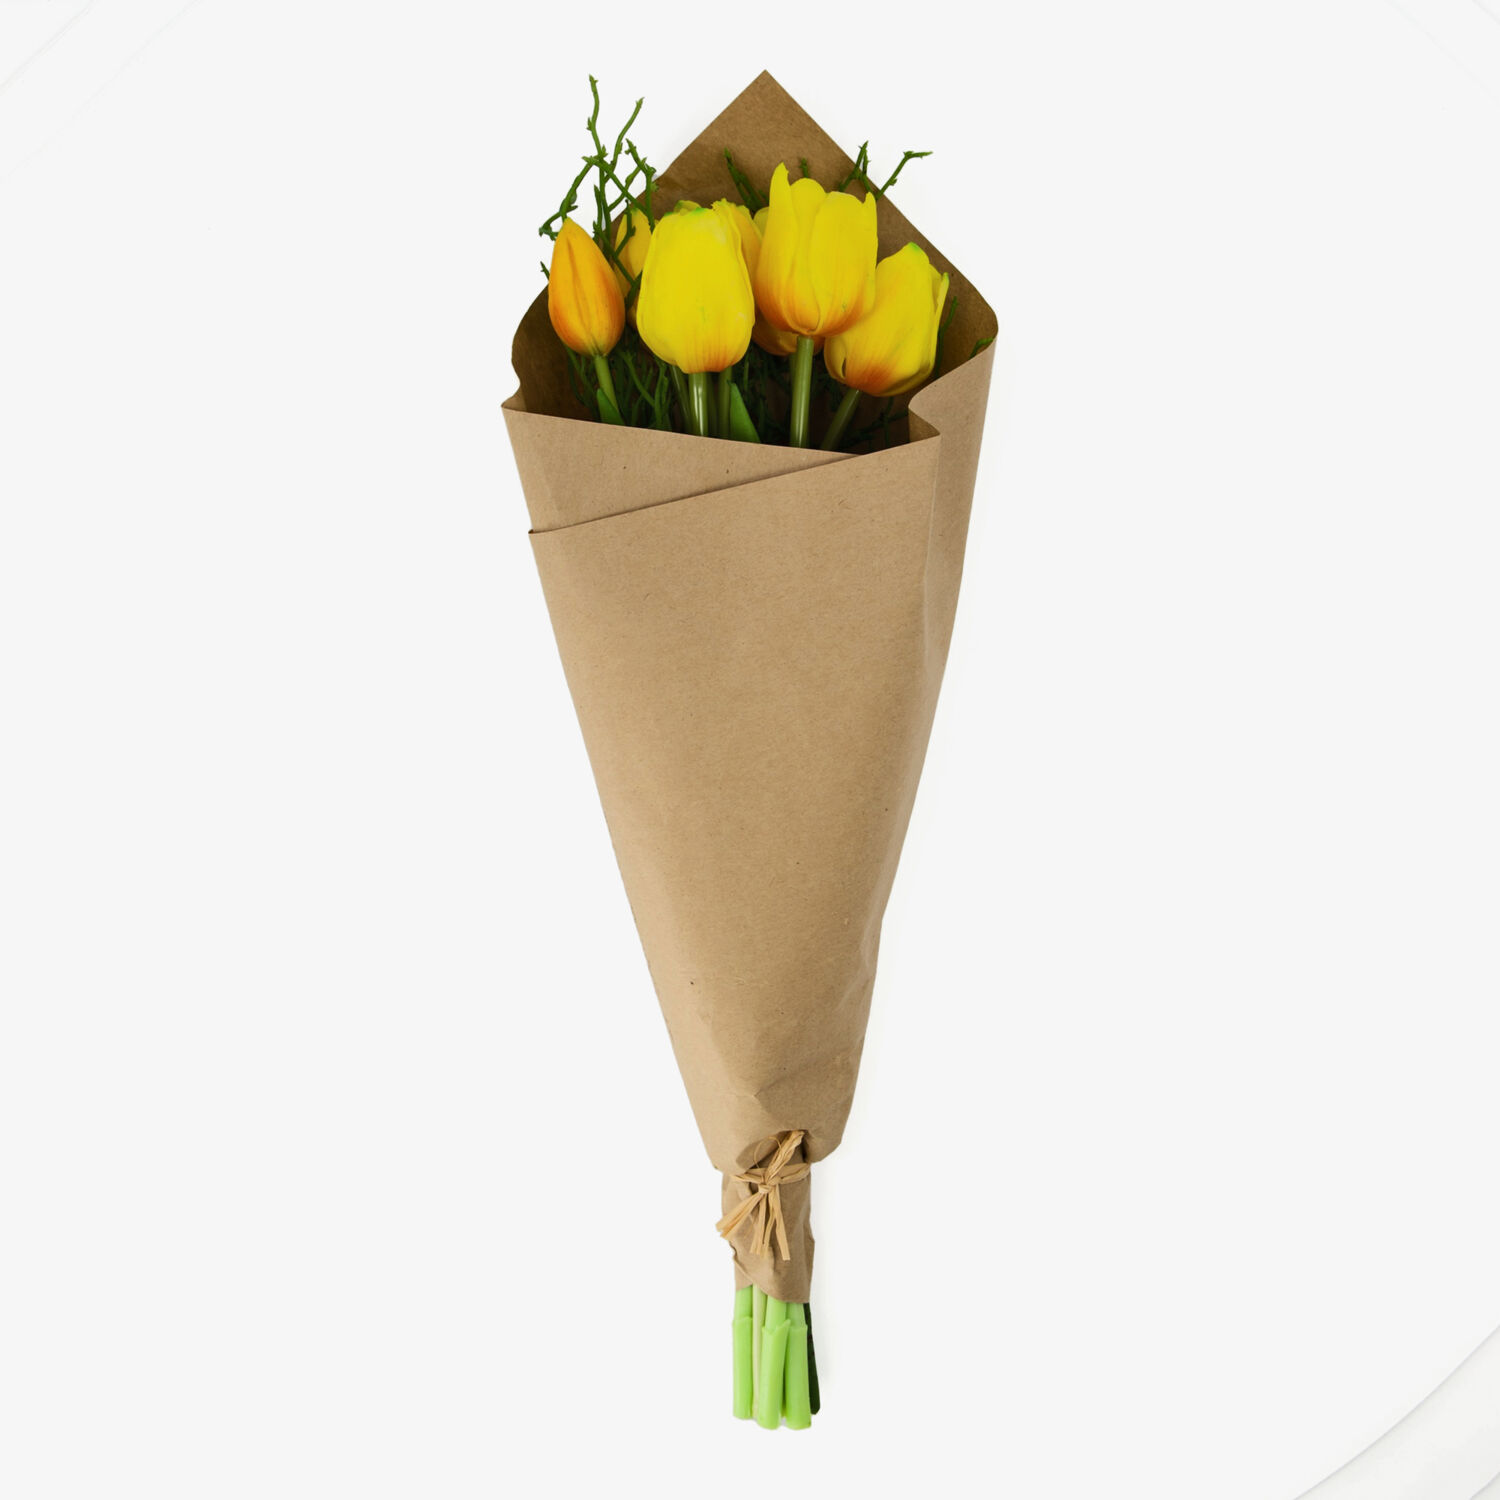 Gelber künstlicher Tulpenstrauß 45cm Maxx mit at Papierhülle TK 